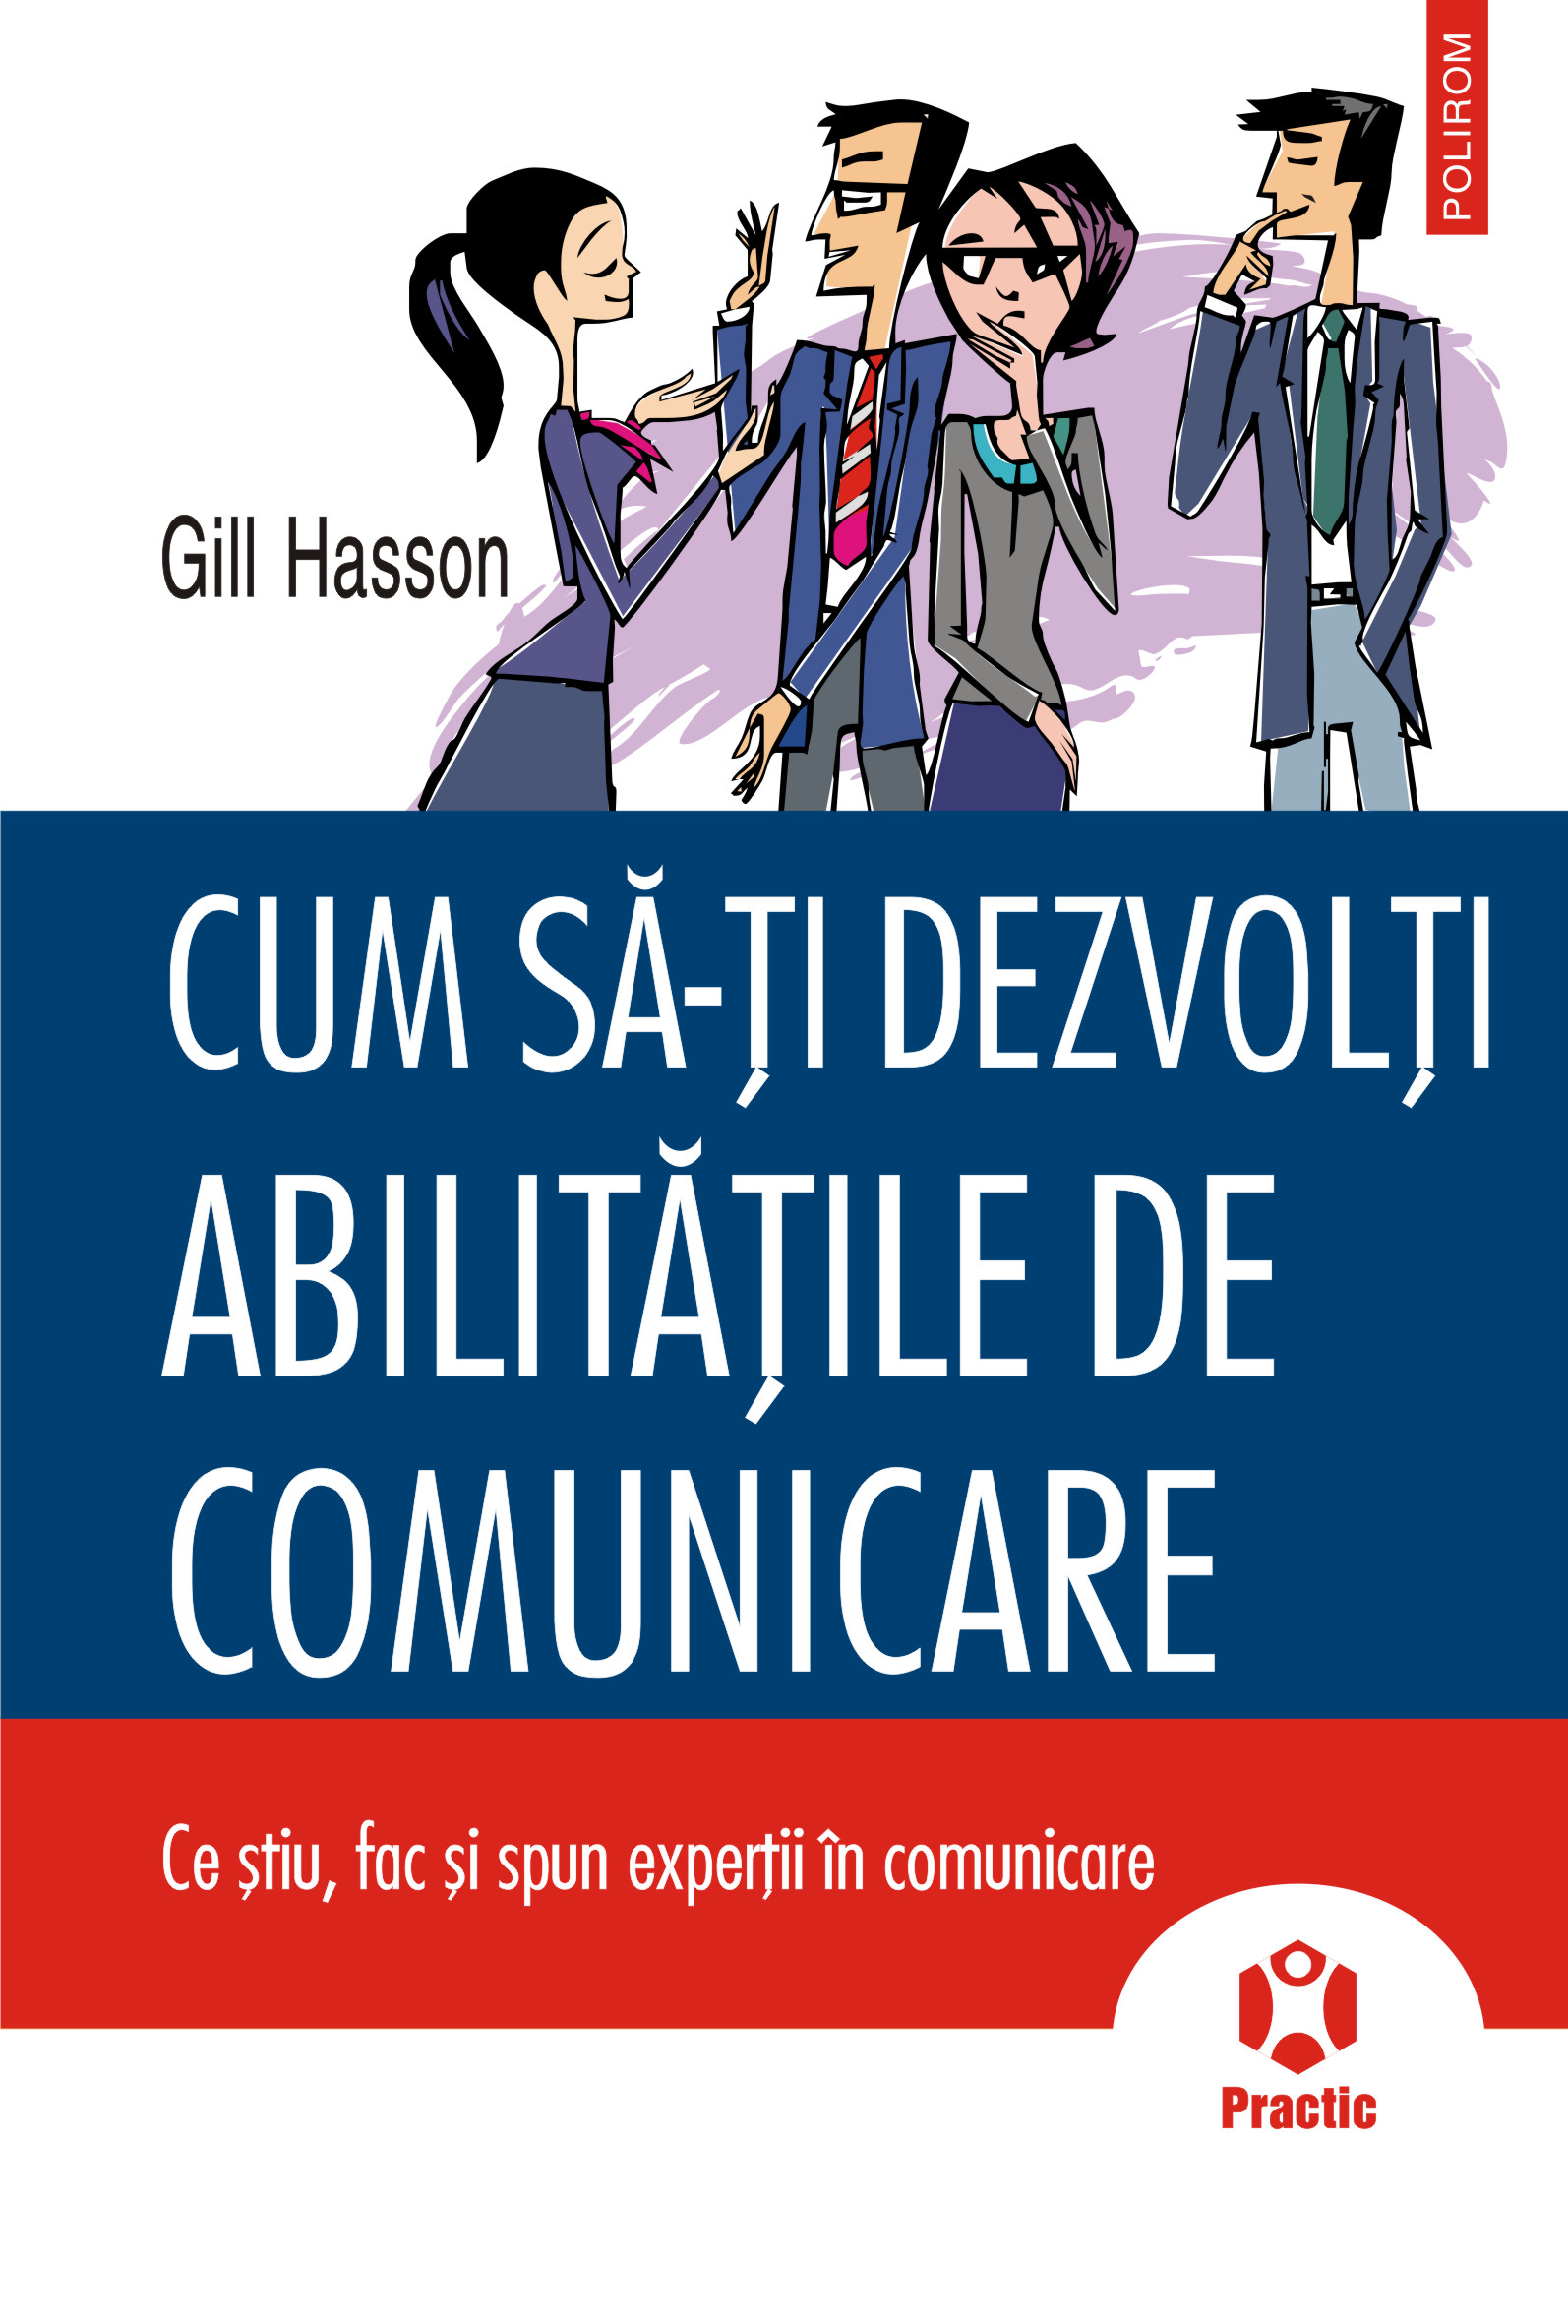 eBook Cum sa-ti dezvolti abilitatile de comunicare - Gill Hasson